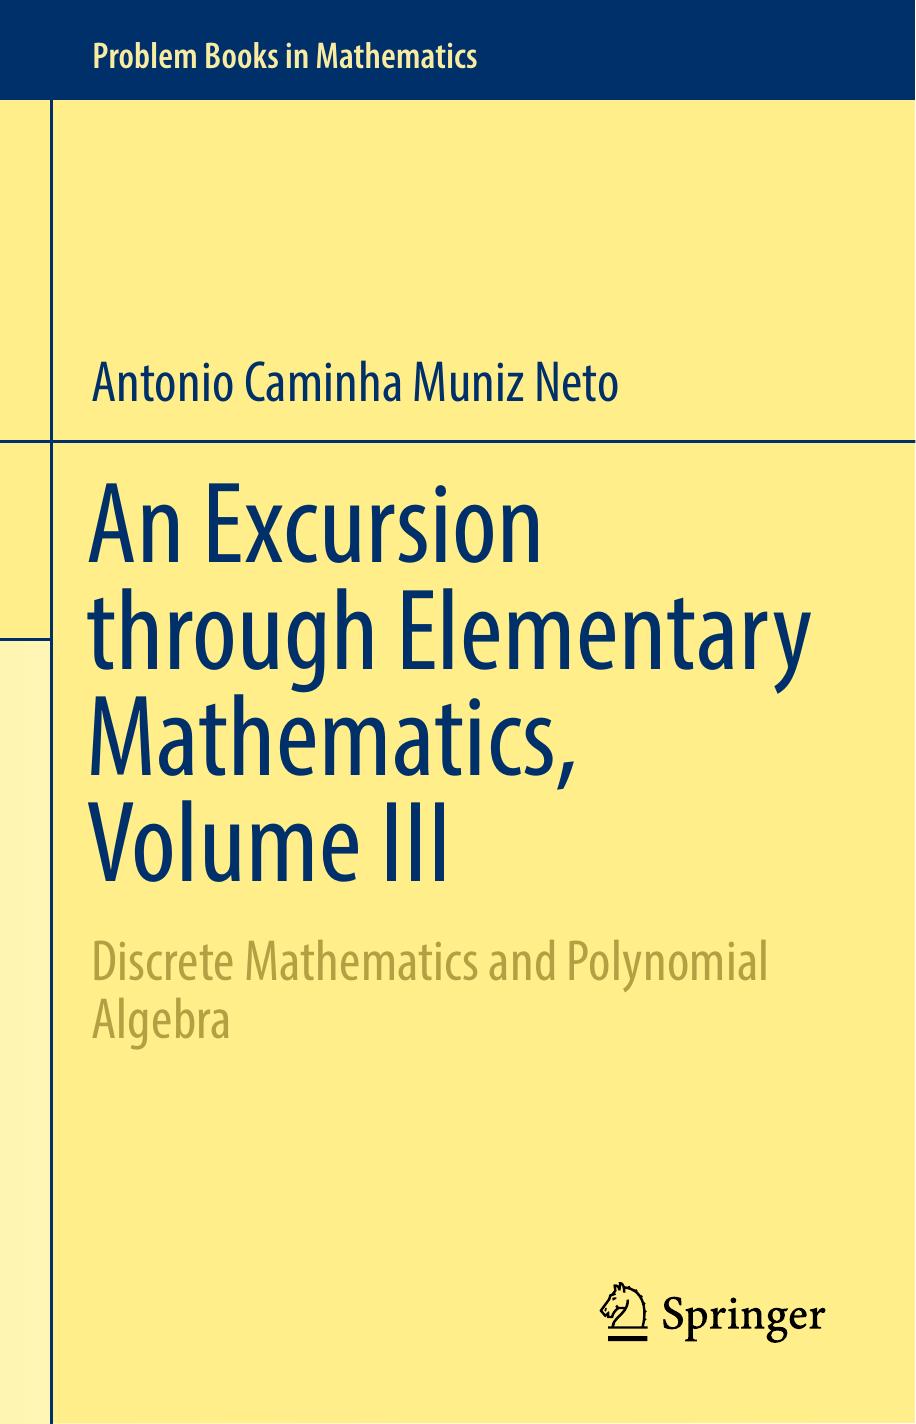 An Excursion through Elementary Mathematics, Volume III Discrete Mathematics and Polynomial Algebra 2018